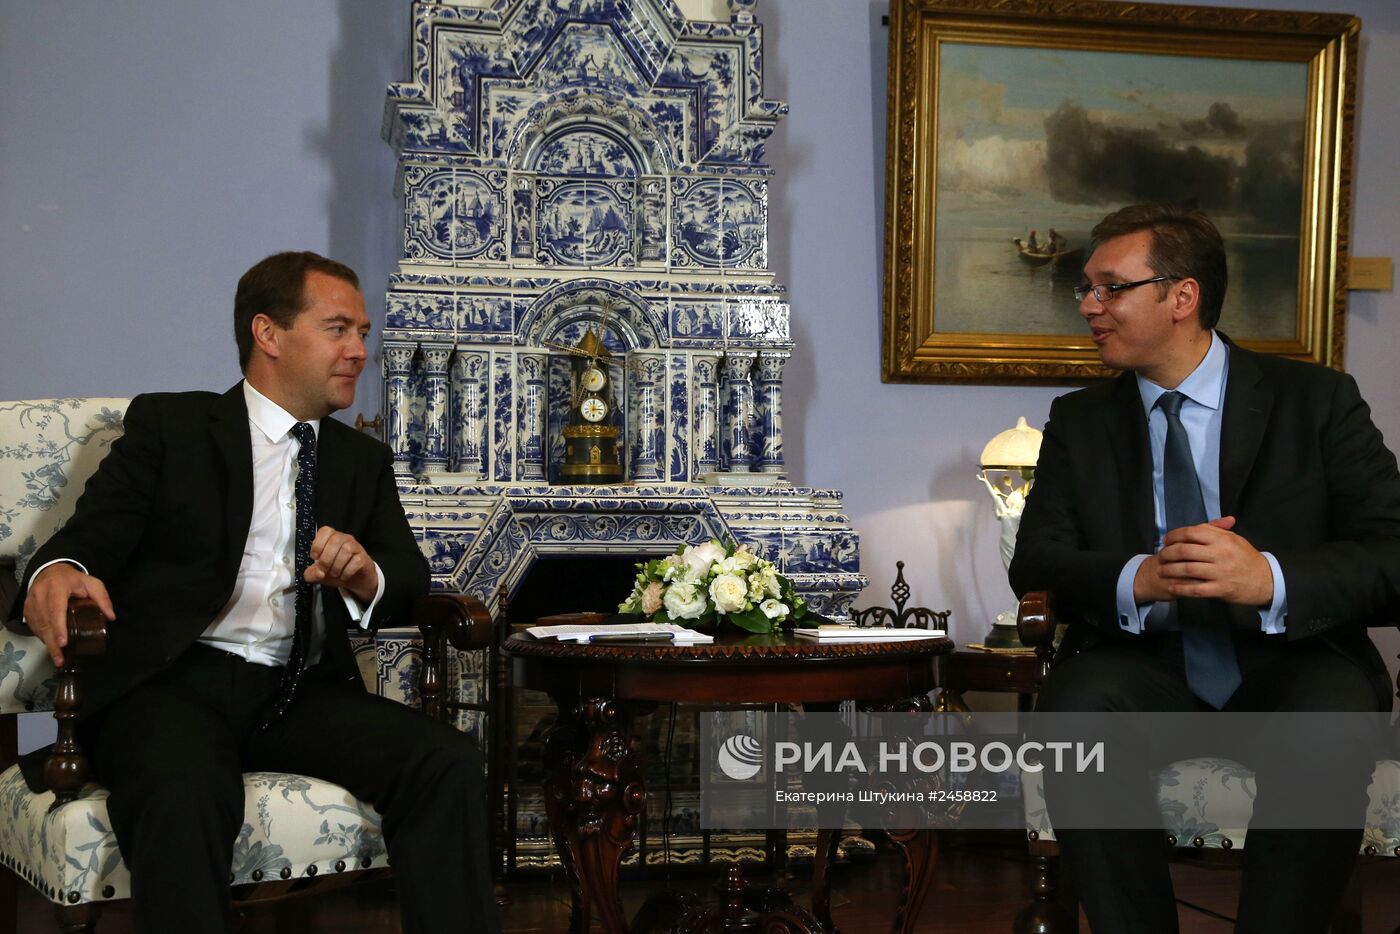 Д.Медведев провел встречу с премьер-министром Сербии А.Вучичем